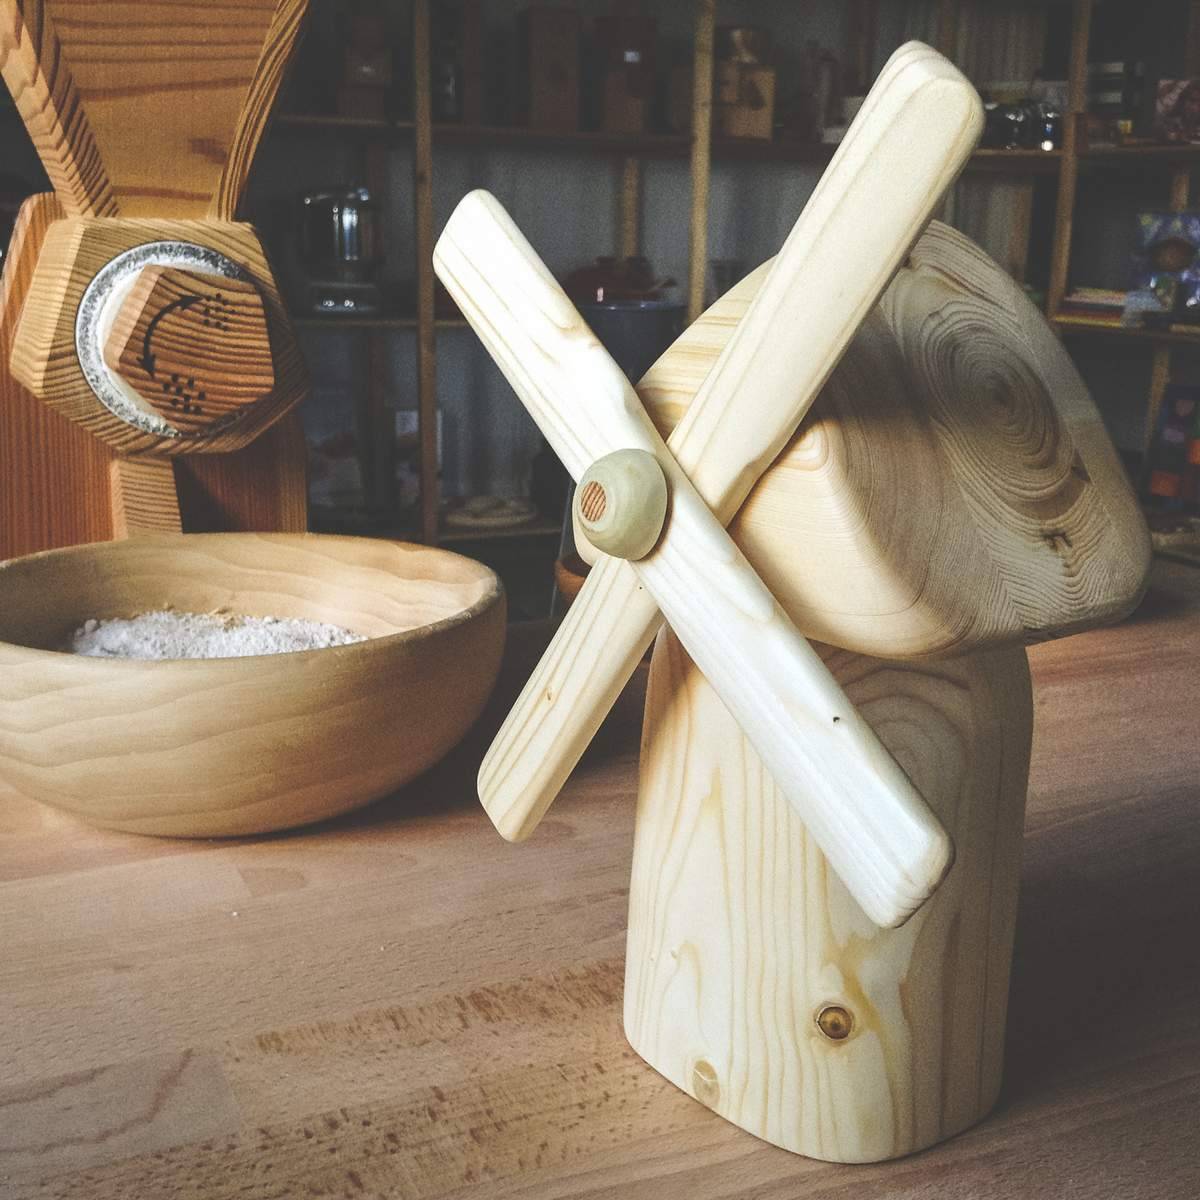 Поделки из дерева — пошаговая инструкция как изготовить деревянные поделки своими руками (200 фото + видео мастер-класс)